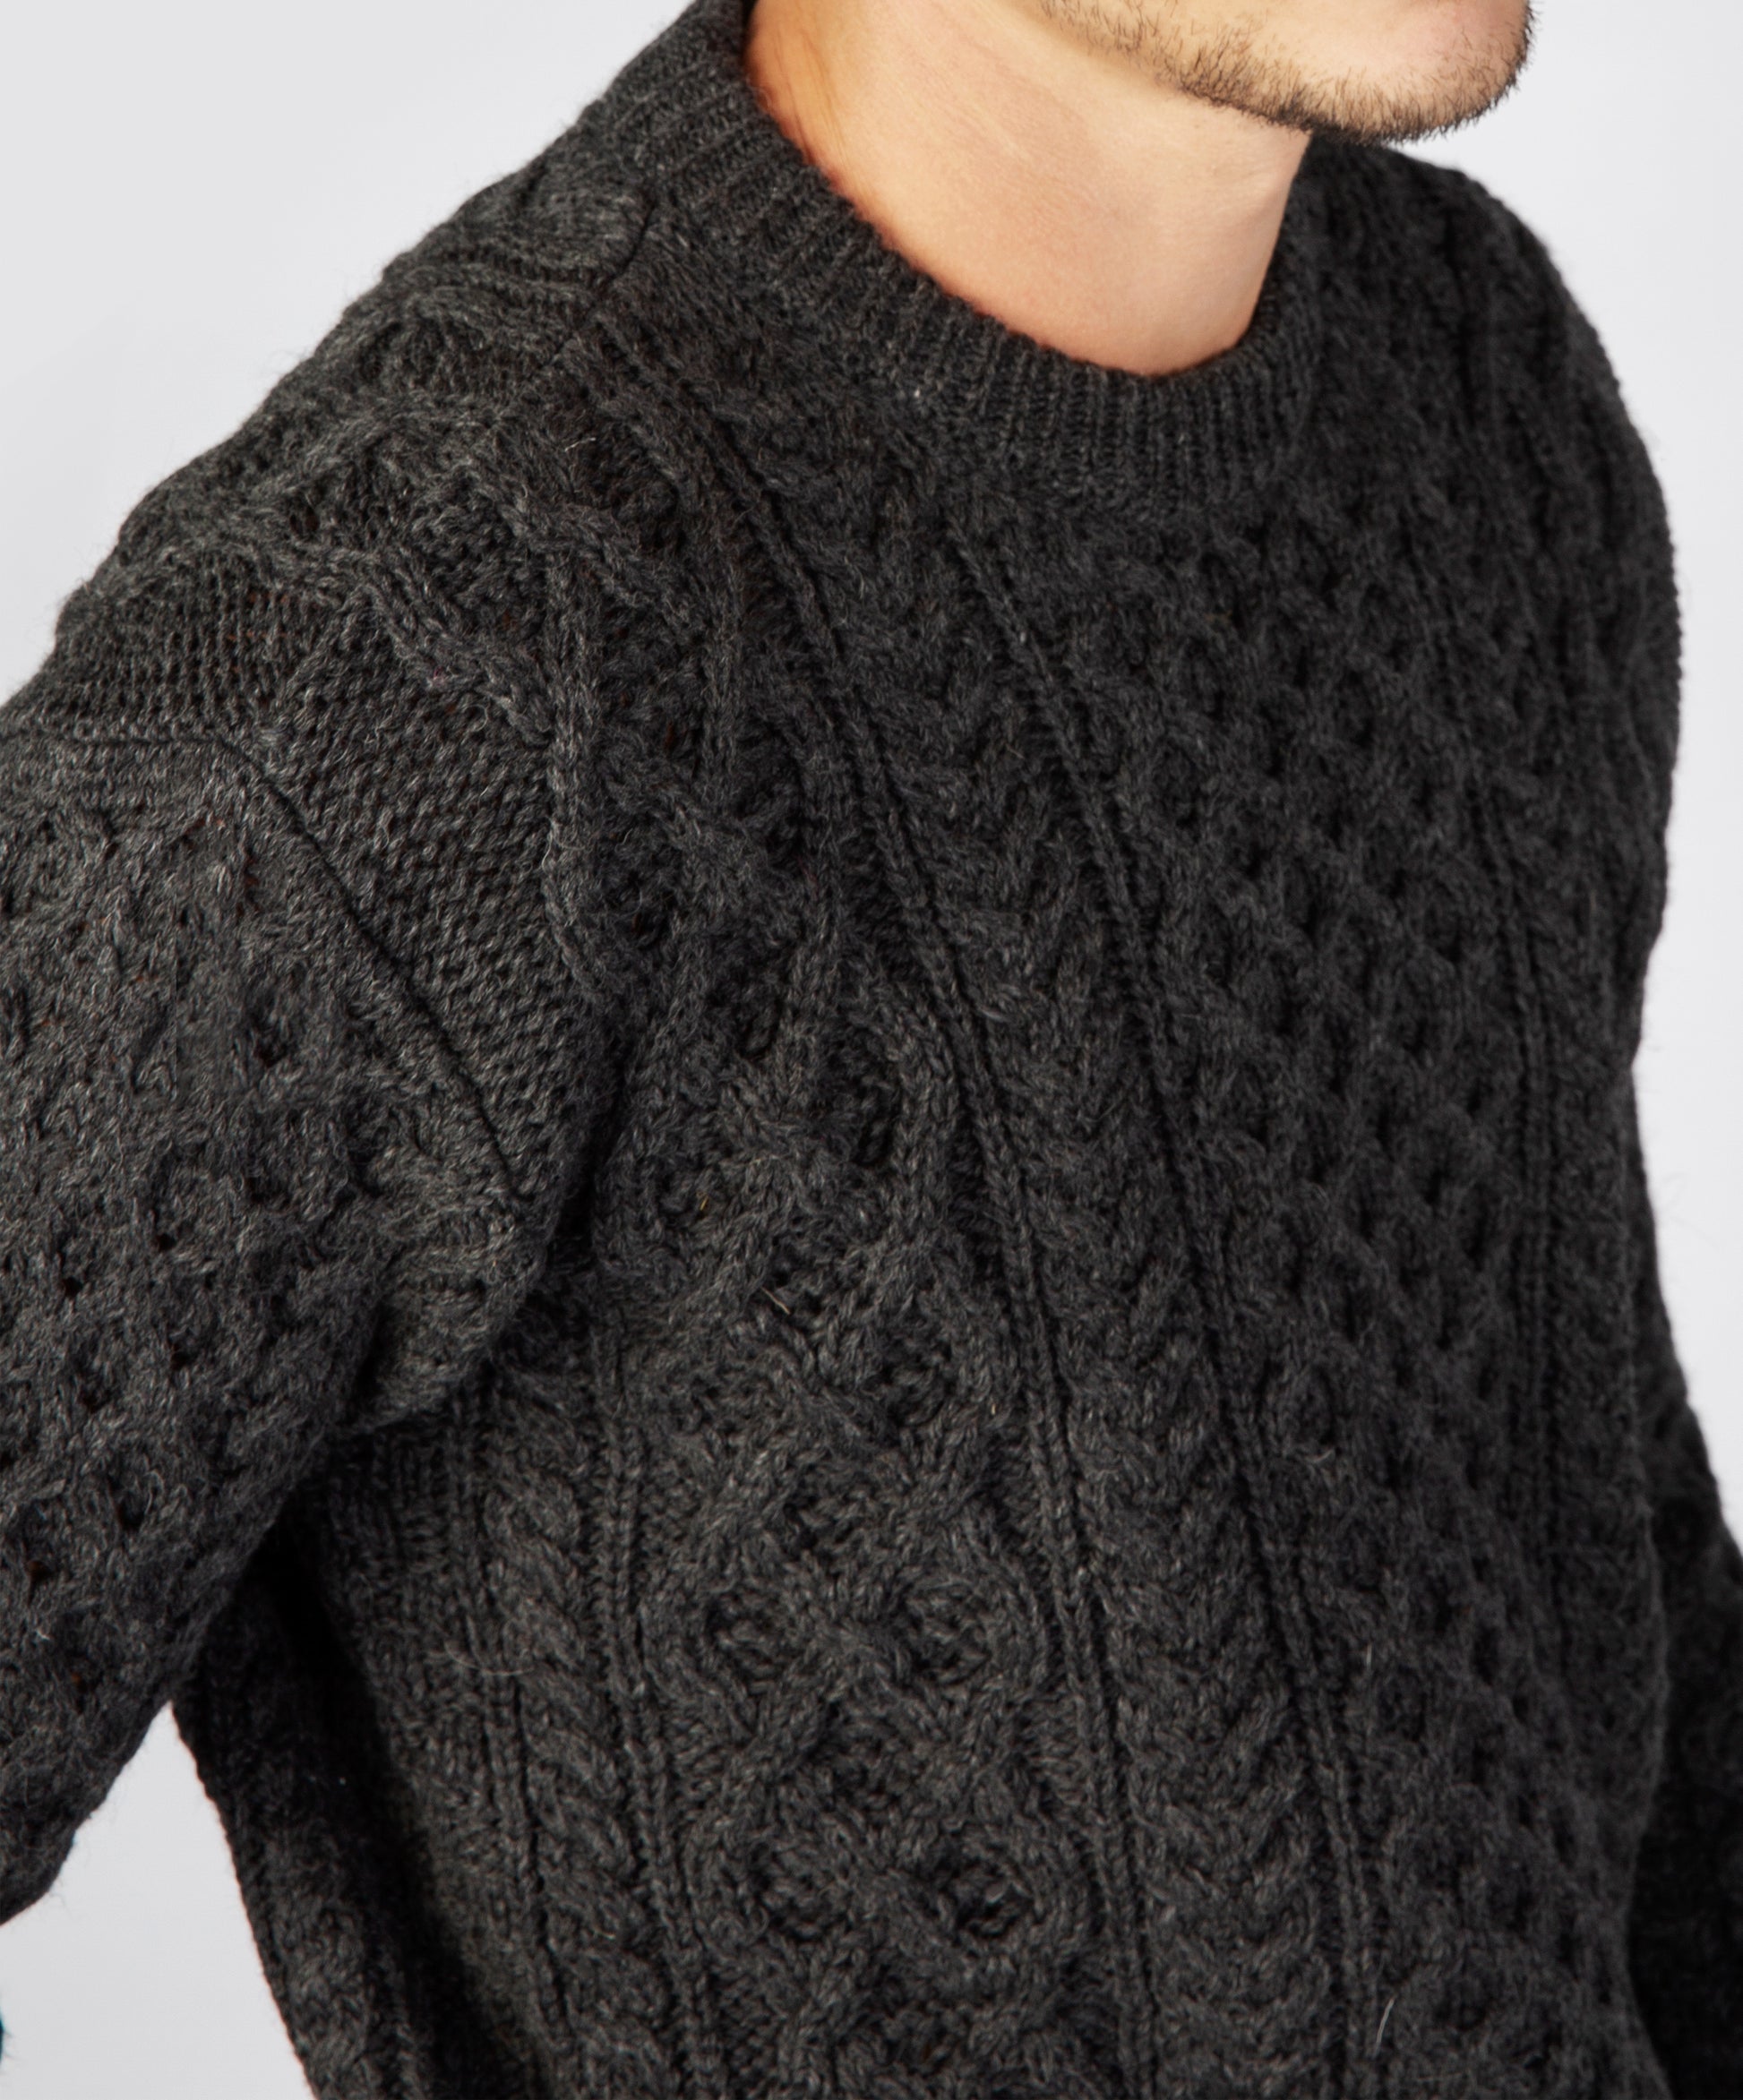 IrelandsEye Knitwear Blasket Honeycomb Stitch Mens Aran Sweater Graphite